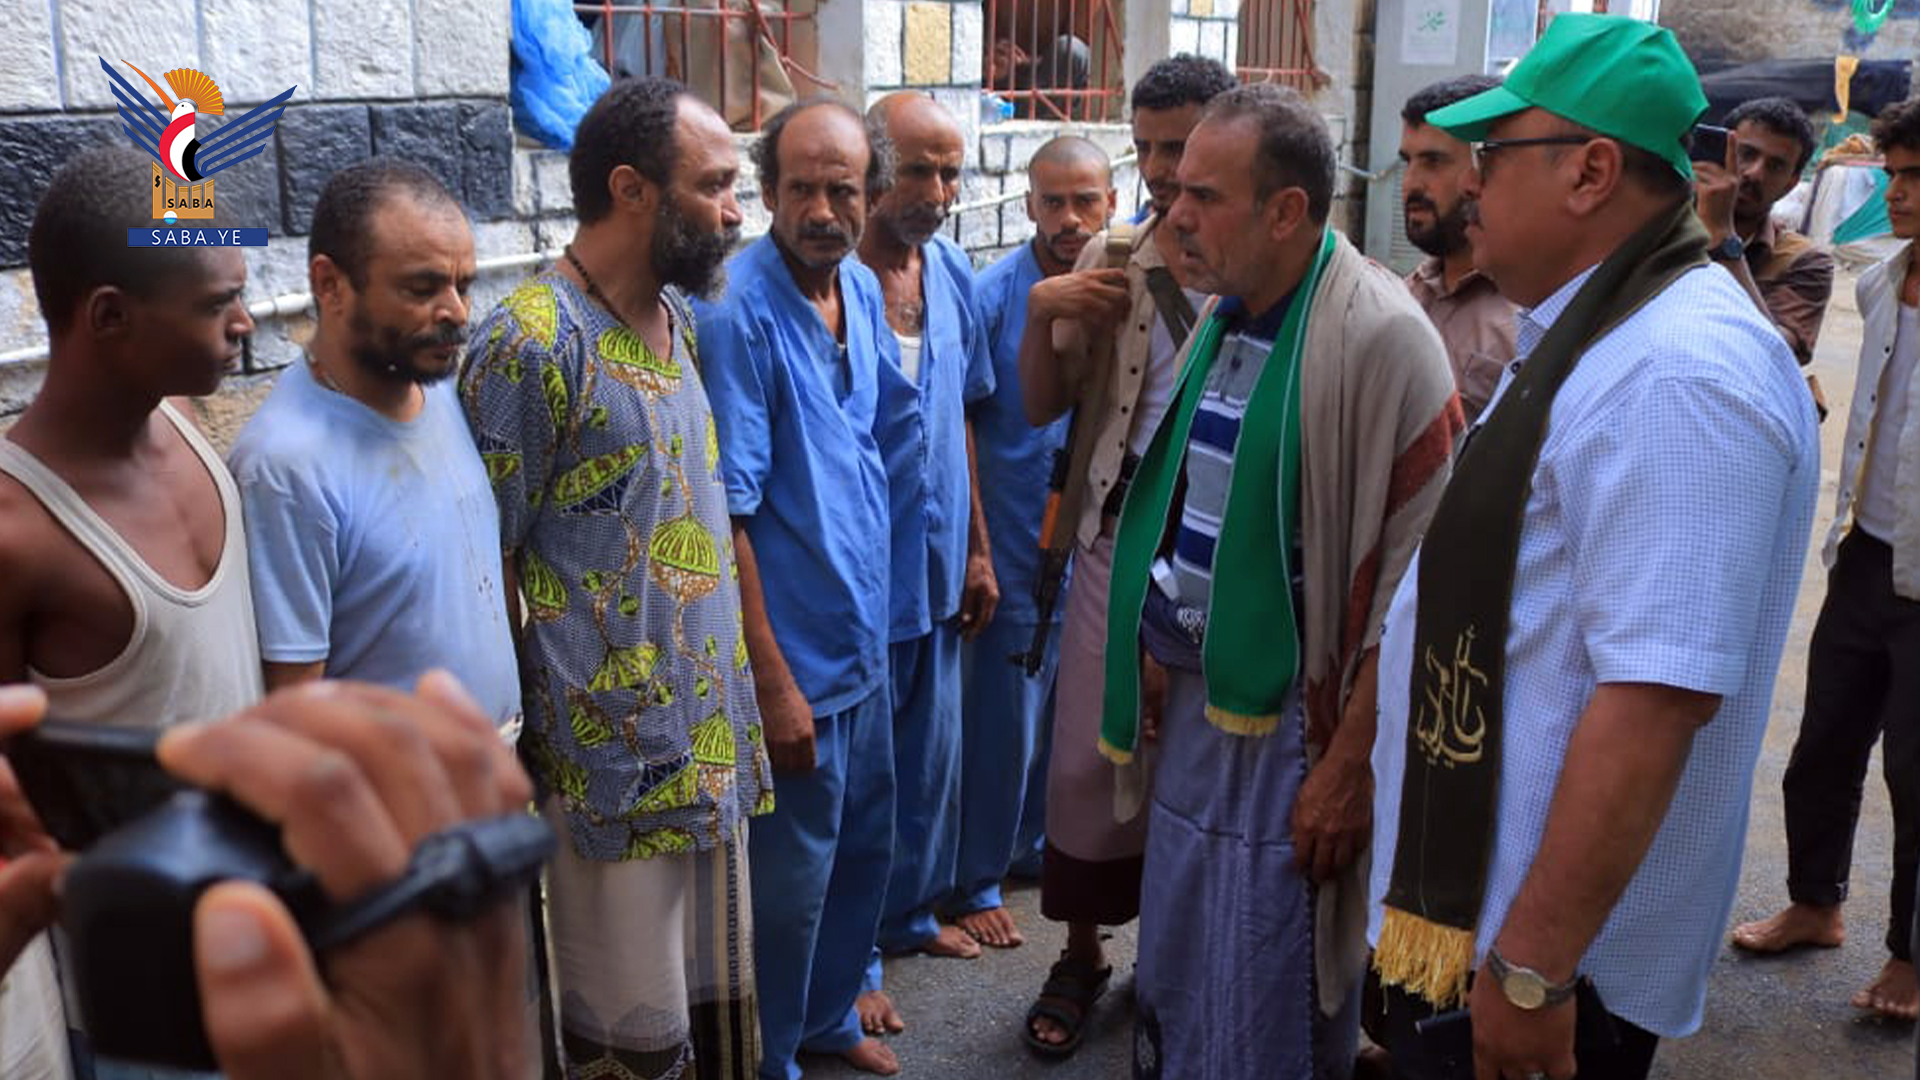 Le procureur général ordonne la libération de 585 prisonniers à Hodeidah à l'occasion de l'anniversaire du Prophète